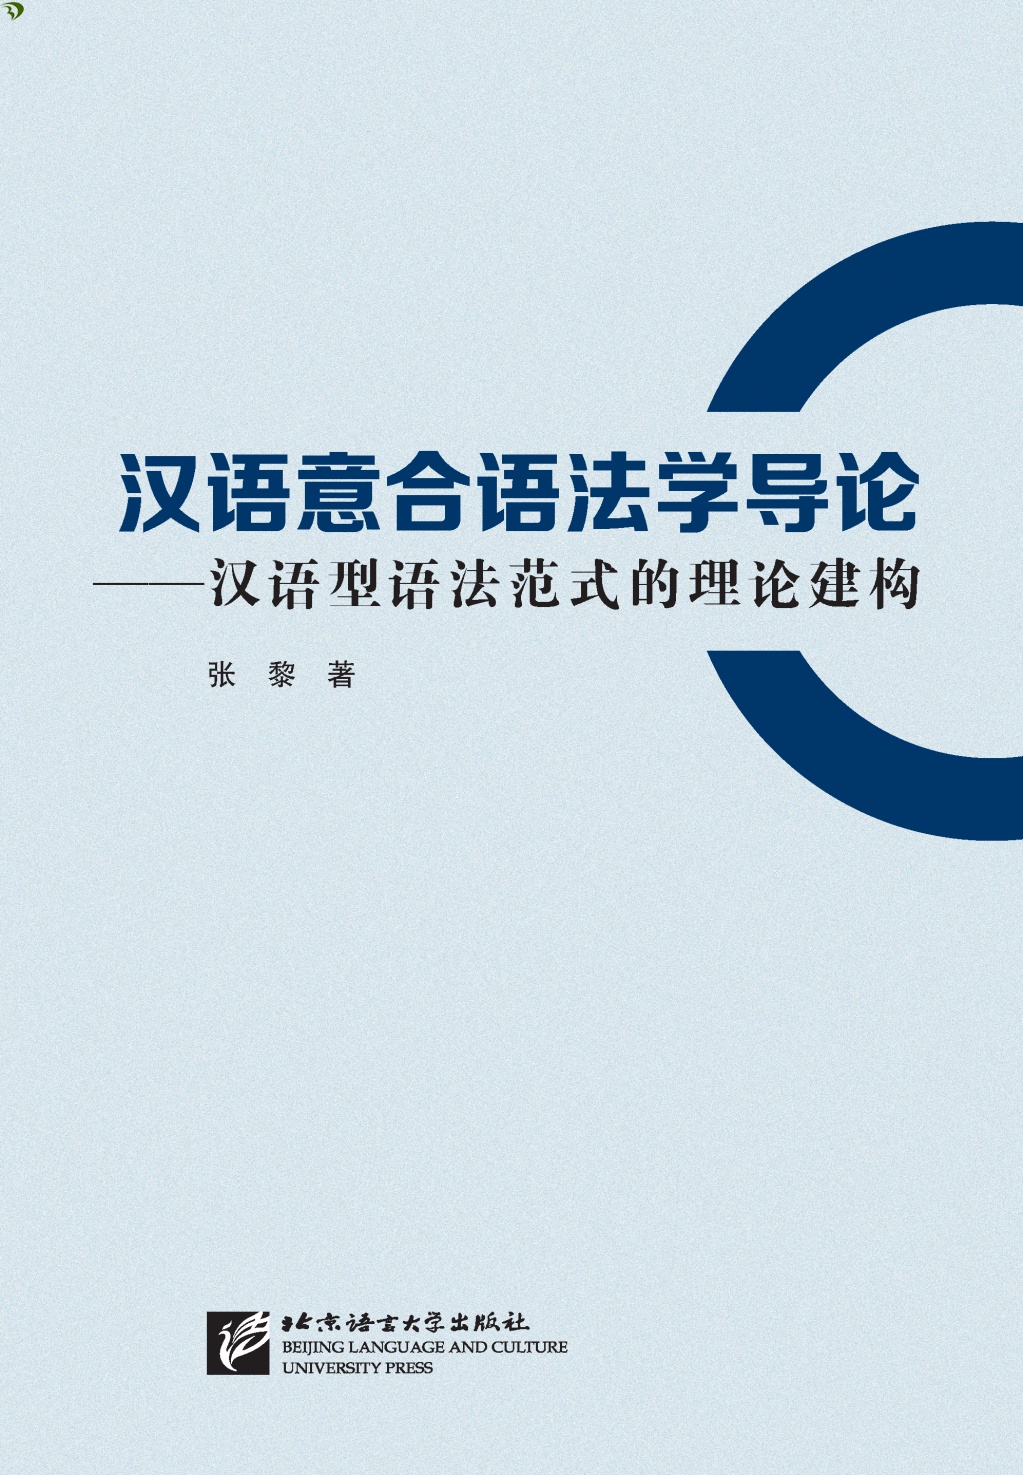 張黎著『漢語意合語法学導論―漢語型語法範式的理論建構』北京語言大学出版社2017